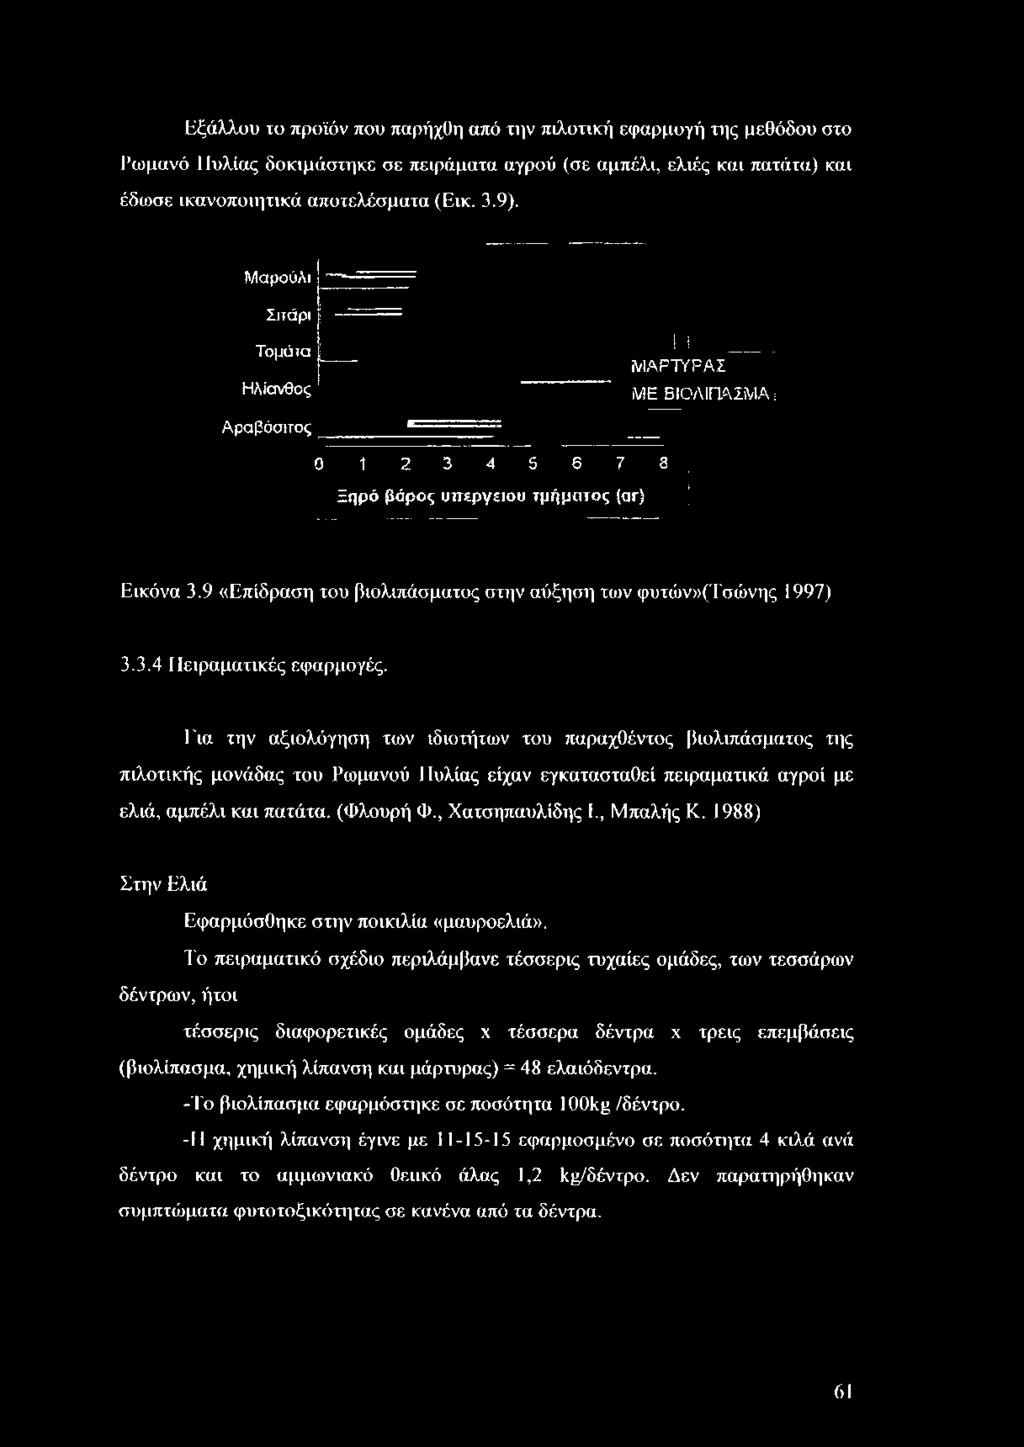 9 «Επίδραση του β ιολιπάσματος στην αύξηση των φυτών»(τσώνης 1997) 3.3.4 Πειραματικές εφαρμογές.